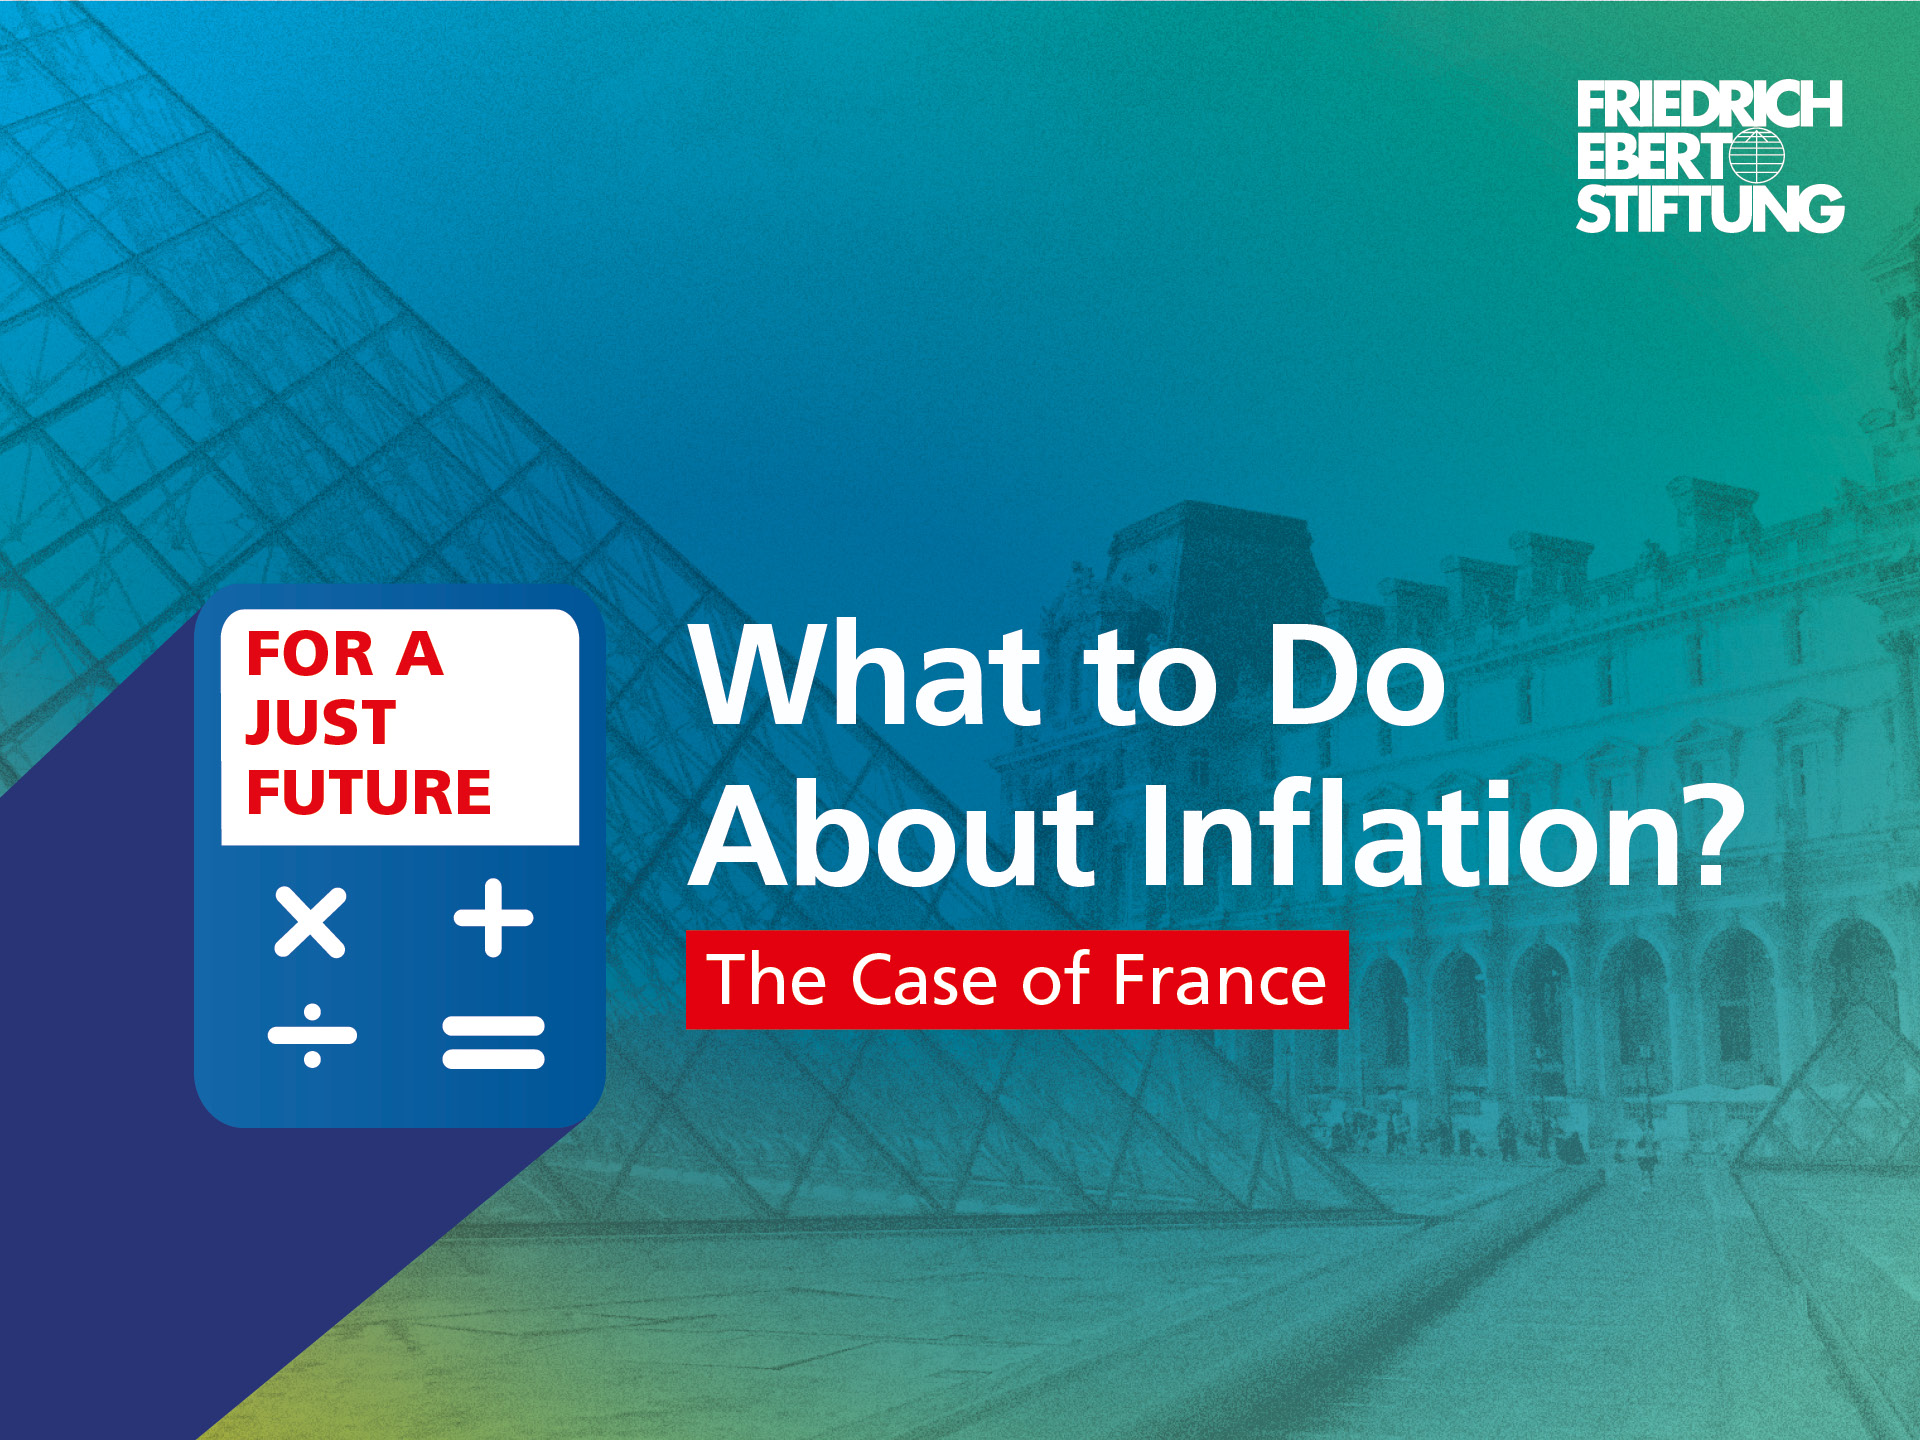 Blau-grün-gelb verwischter Hintergrund. Darauf der weiße Schriftzug "Was tun gegen die Inflation? Das Beispiel Frankreich". 